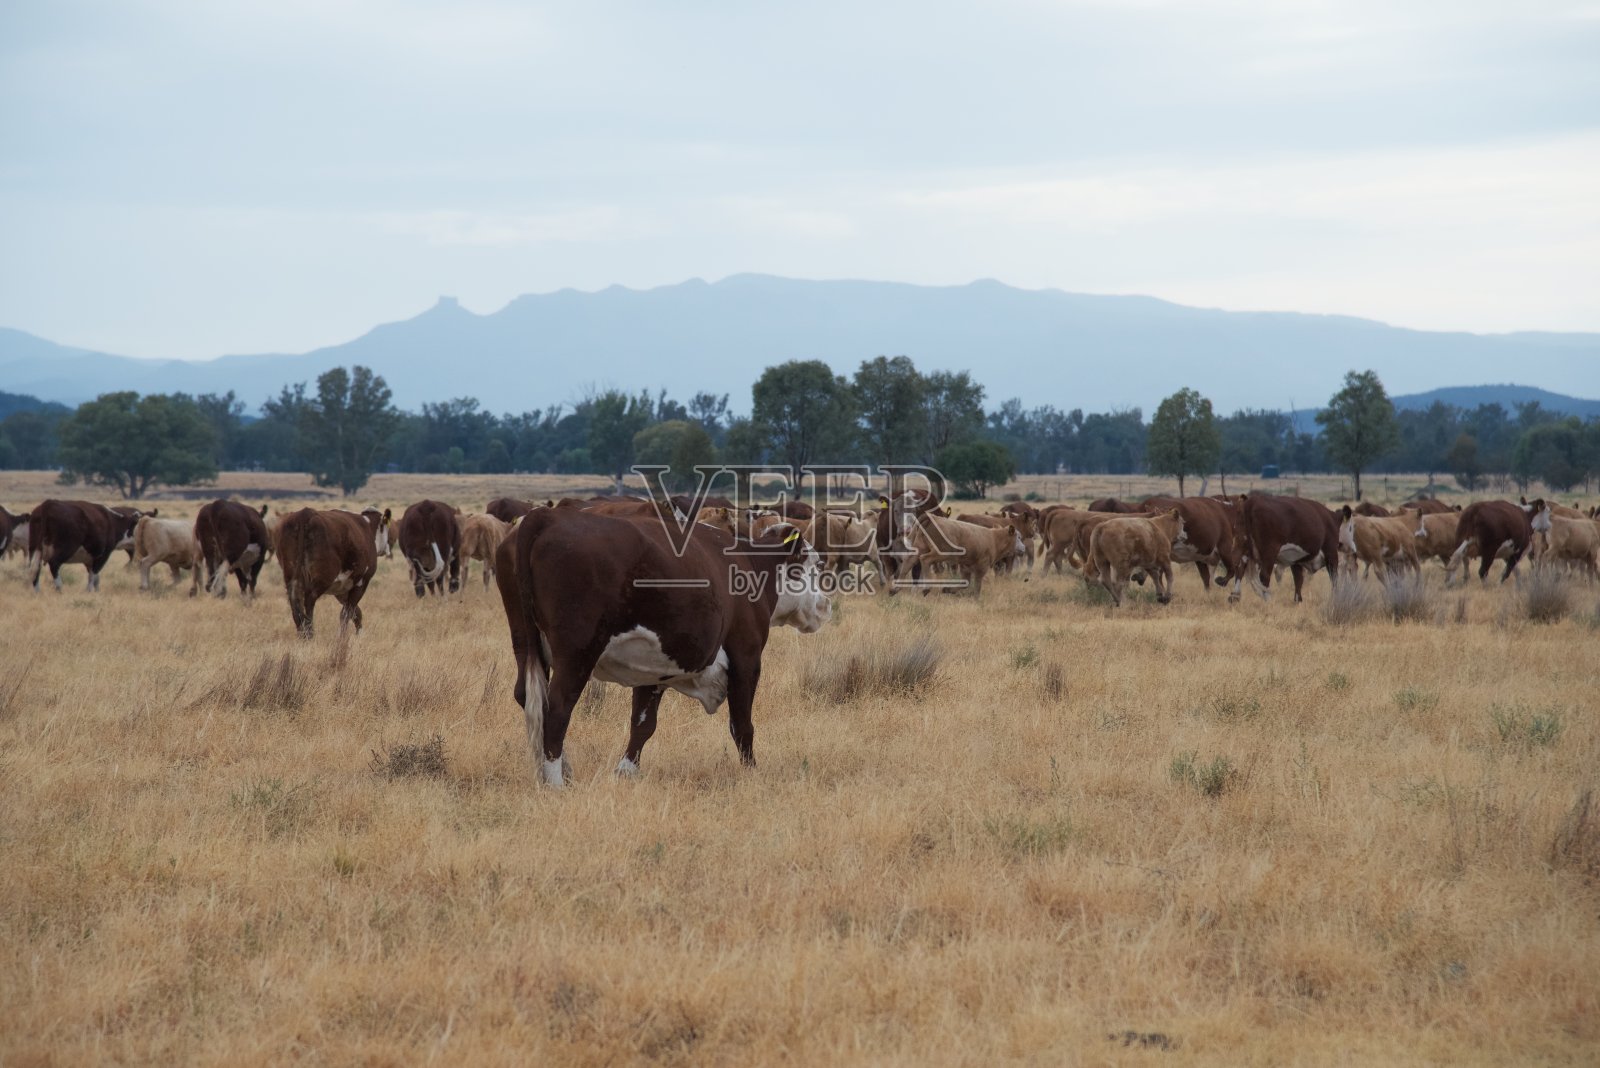 移动牛群-草饲肉牛赫里福德小母牛和小牛照片摄影图片